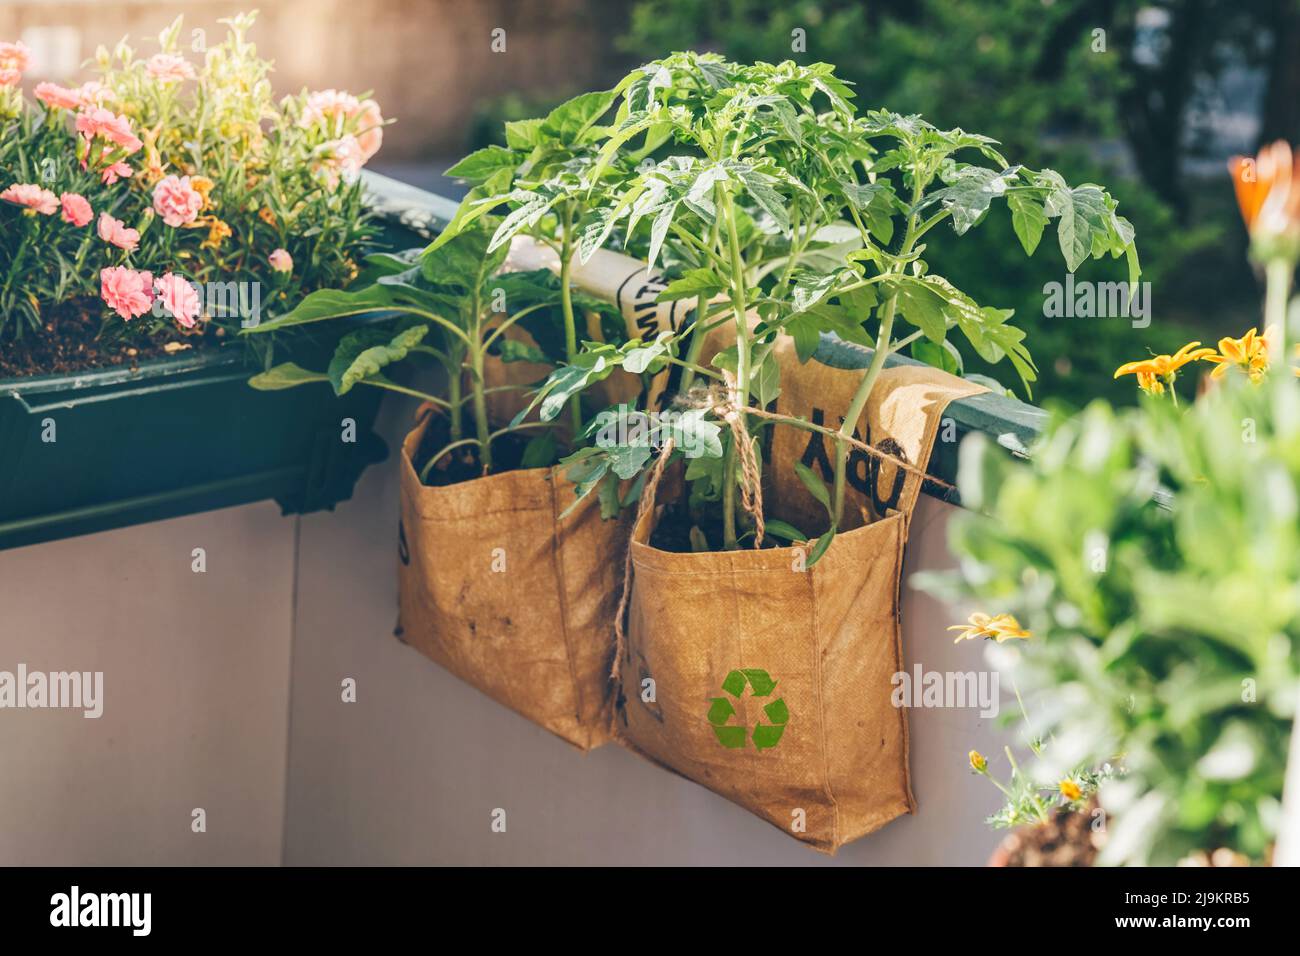 Tomaten wachsen in wiederverwendbaren Pflanzensäcken auf dem Balkon. T-Big-Bags wurden von indischen Arbeitern manuell recycelt. Upcycling zeitlich begrenzte Produkte. Makroökonomischer Trend zur Nachhaltigkeit. Stockfoto